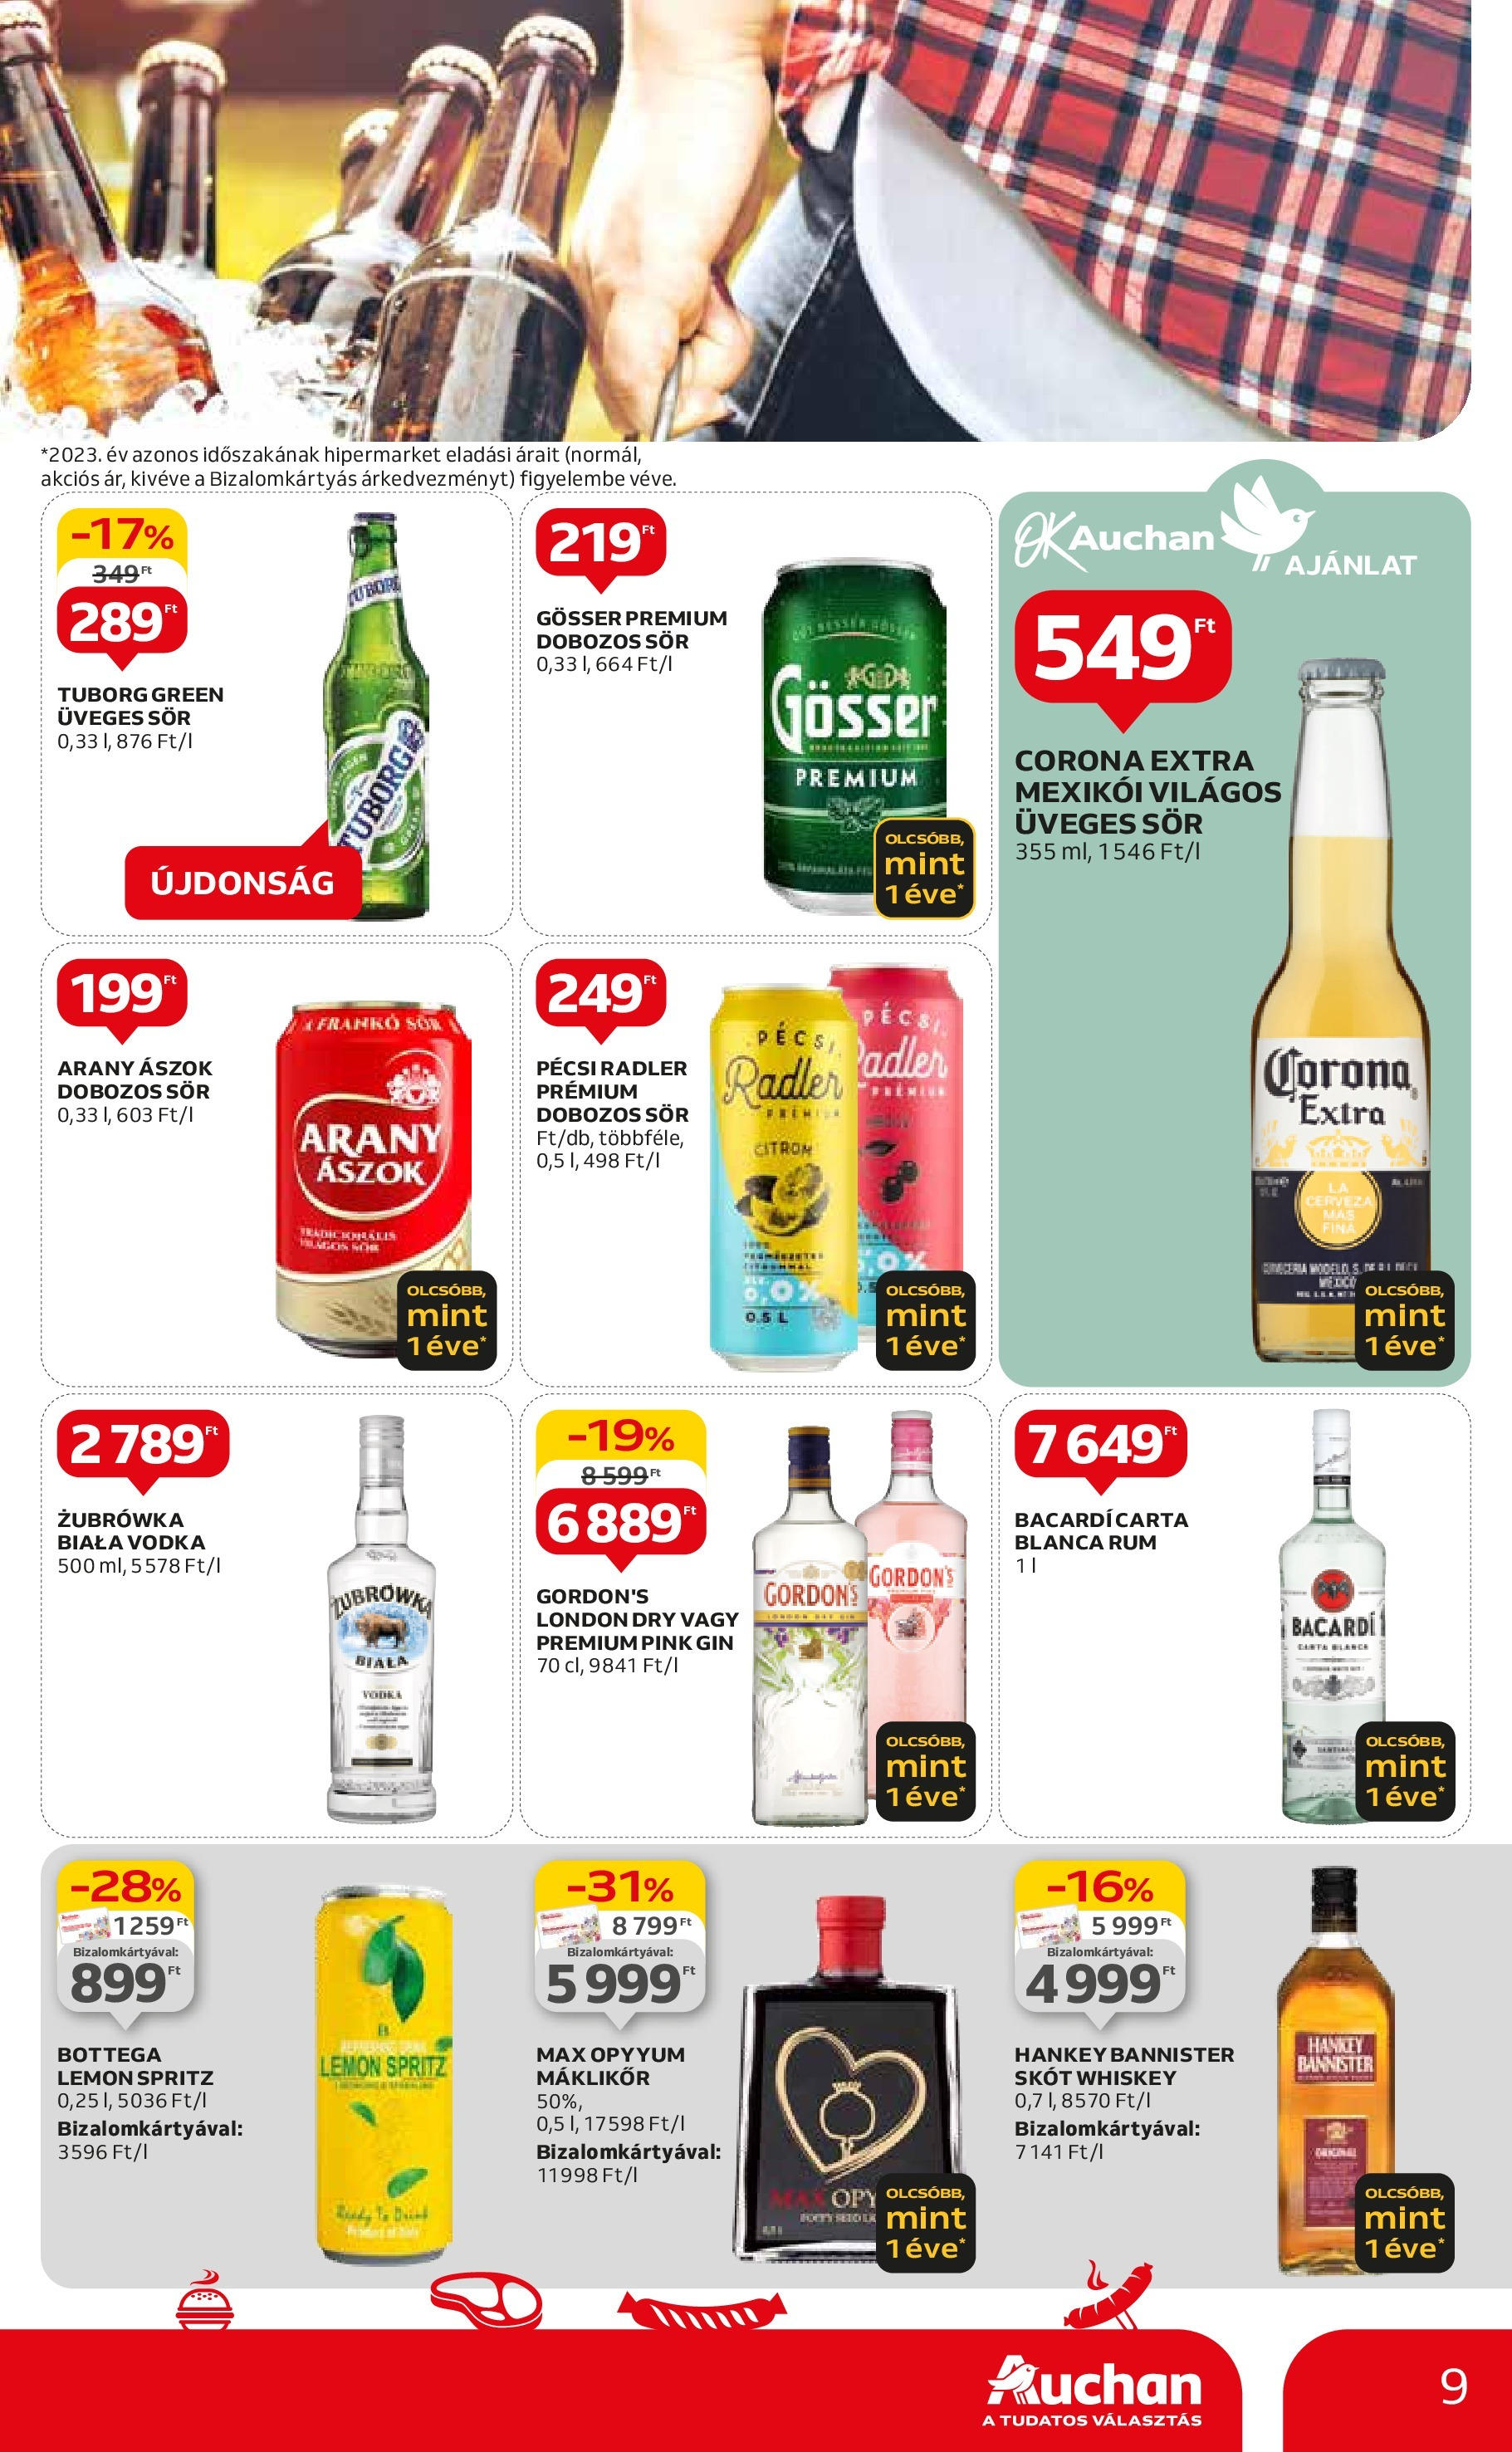 Auchan  Akciós újság - 2024.04.25. -tól/töl > akció, szórólap 🛍️ | Oldal: 9 | Termékek: Whiskey, Arany ászok, Gösser, Vodka